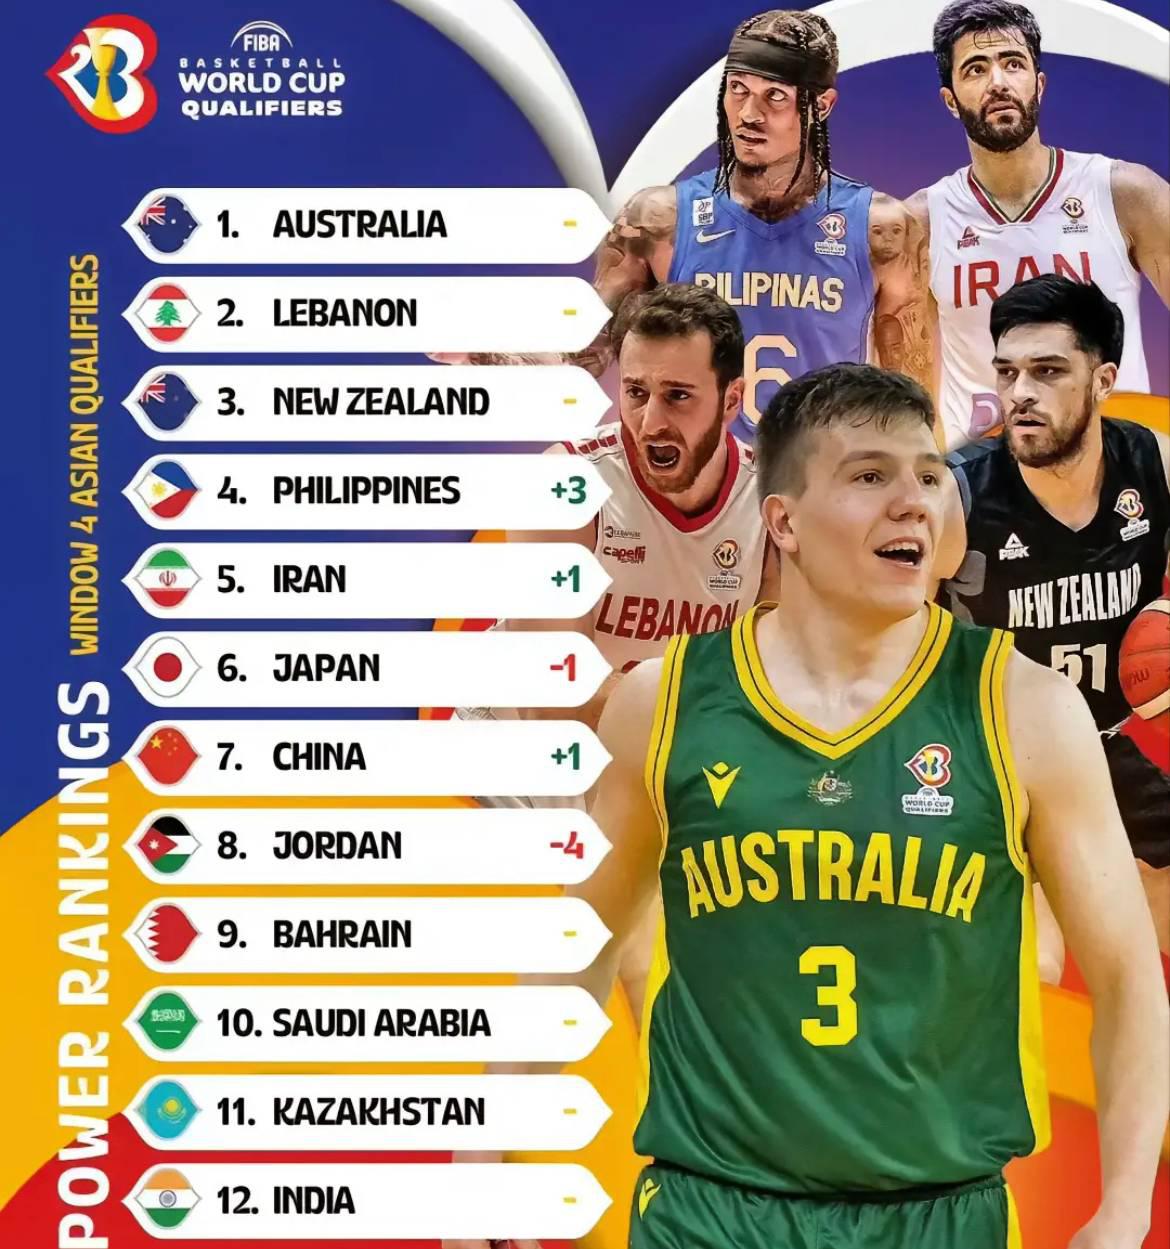 Danh sách đội bóng rổ nam châu Á được phát hành: Đội bóng rổ nam Úc đứng đầu danh sách và xếp hạng bóng rổ nam Trung Quốc Rose (2)